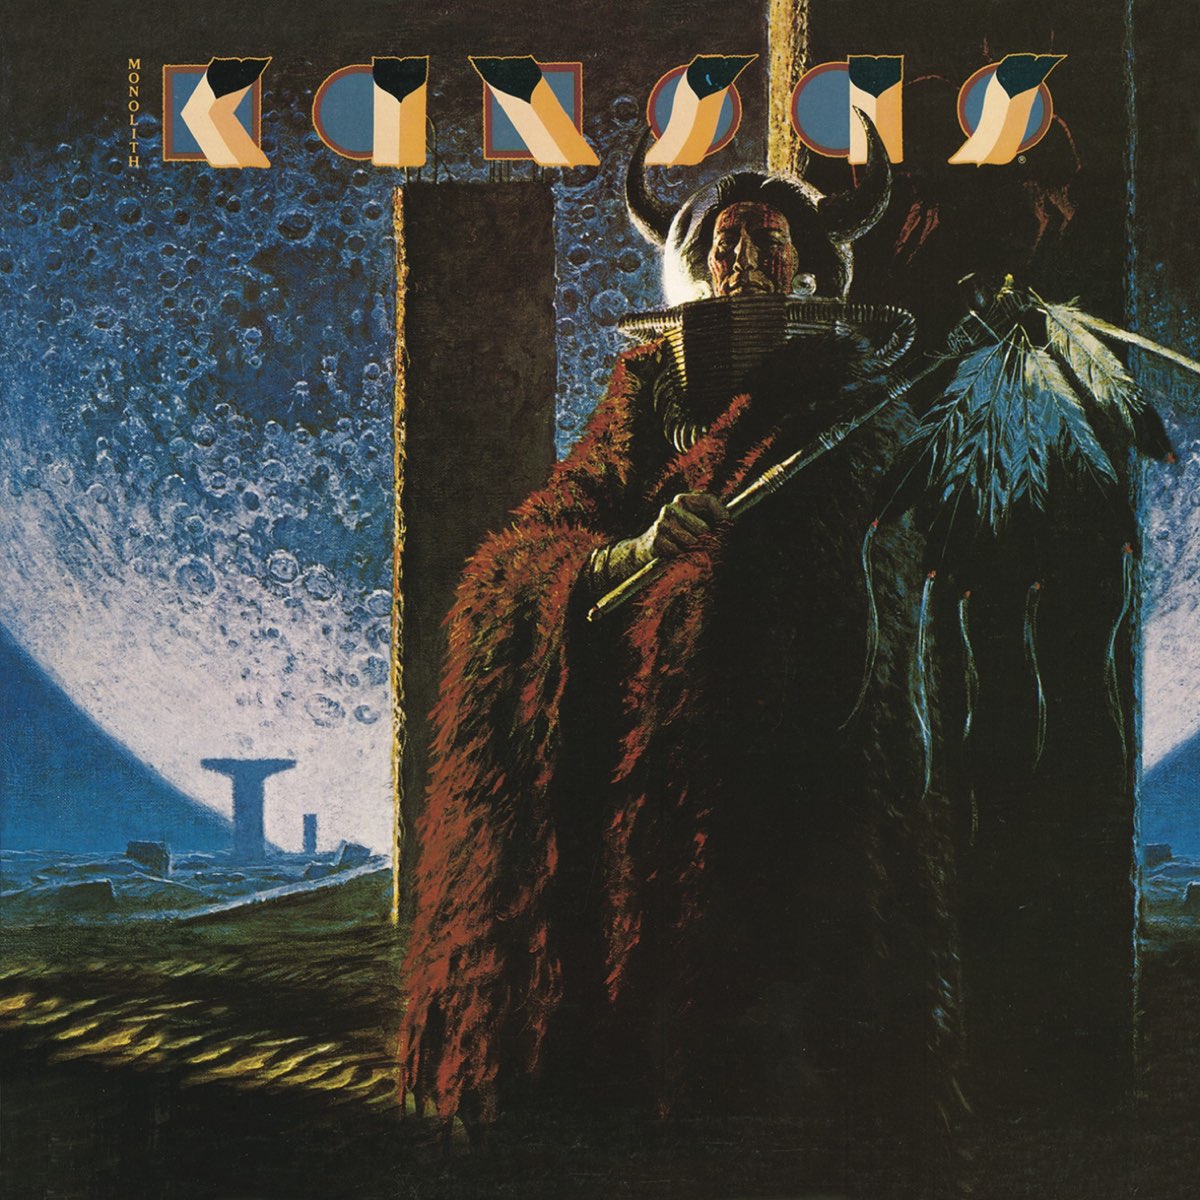 Monolith - шестой студийный альбом американской прогрессивной рок-группы Kansas, выпущенный в 1979 году. Альбом достиг 10-й строчки в чартах альбомов Billboard, став их третьим подряд (и последним) студийным альбомом, попавшим в первую десятку.